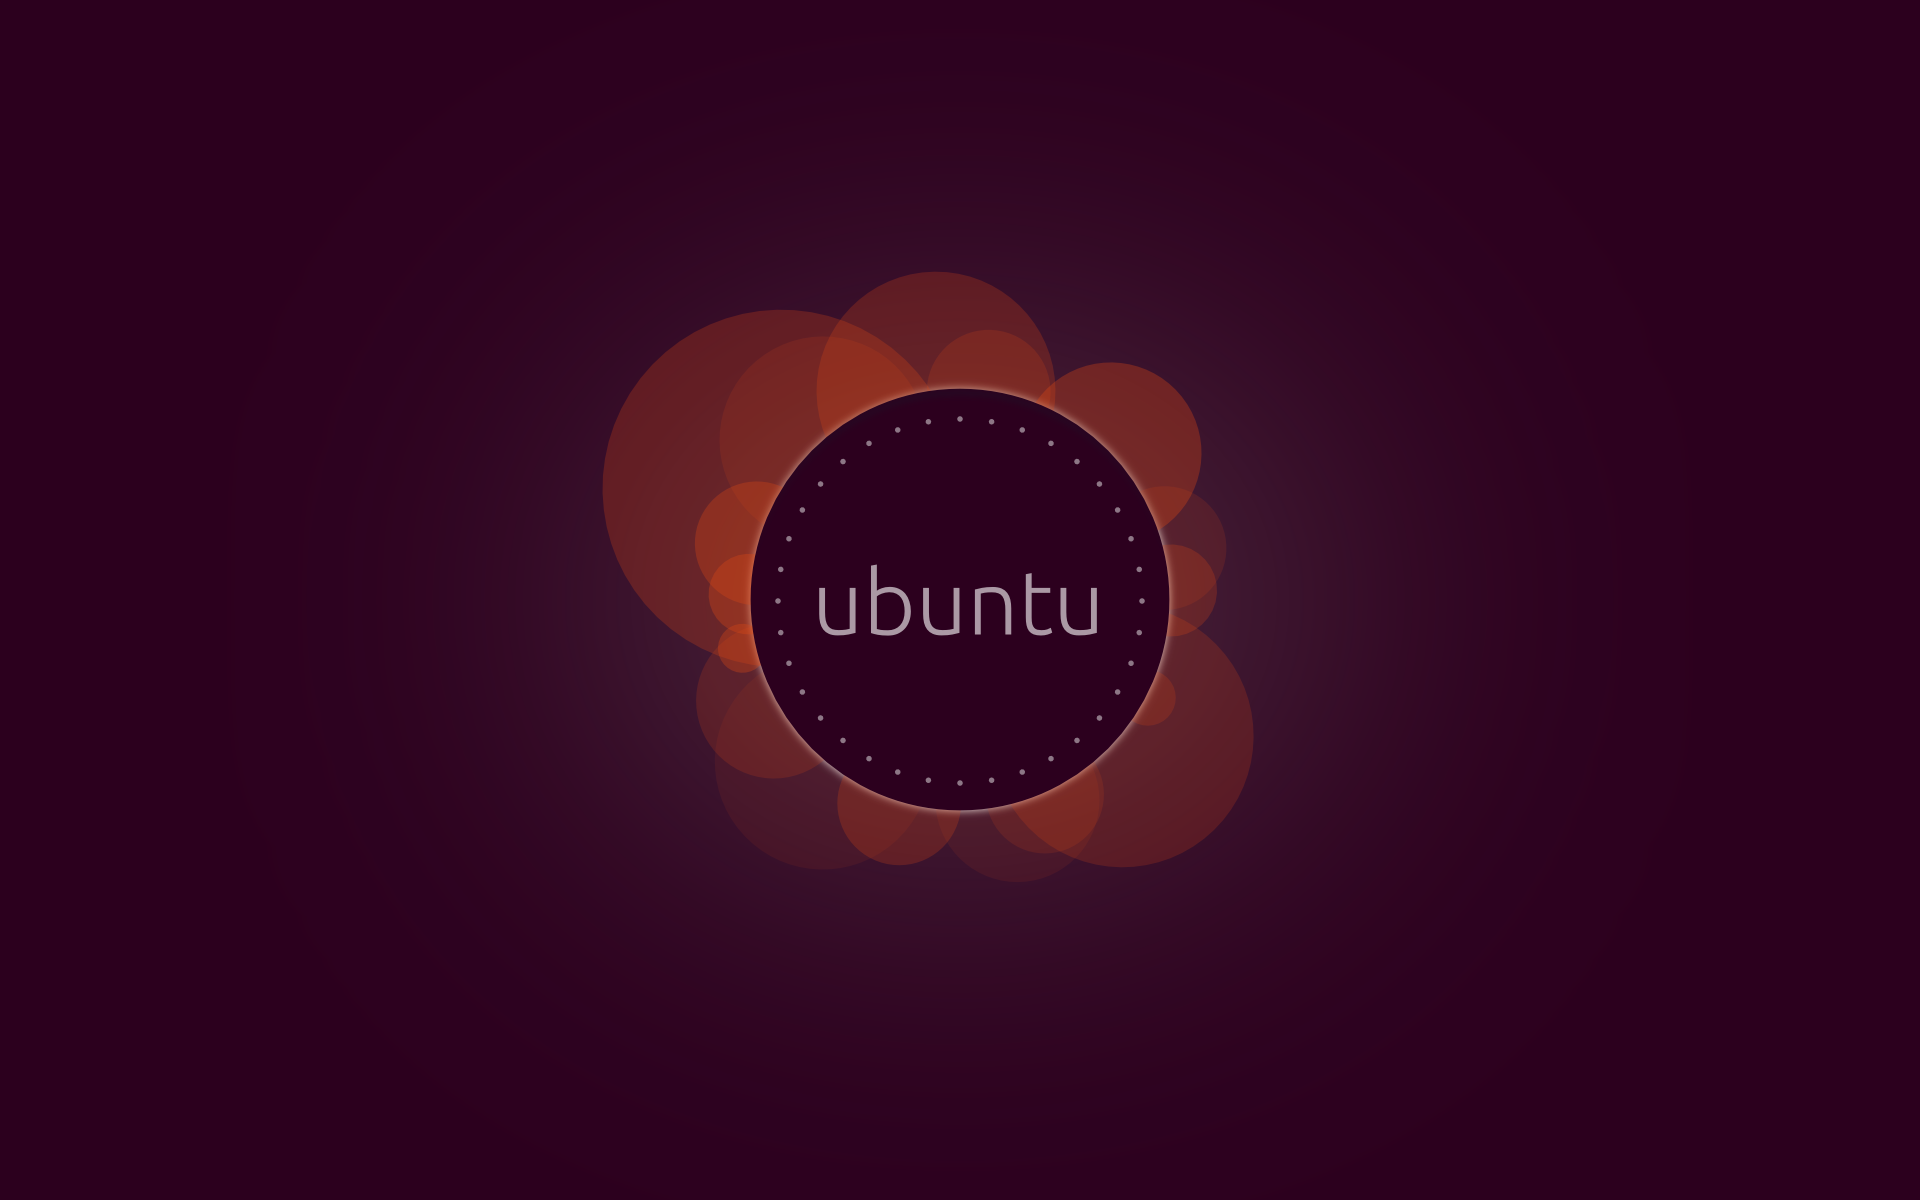 Cool Ubuntu Wallpaper